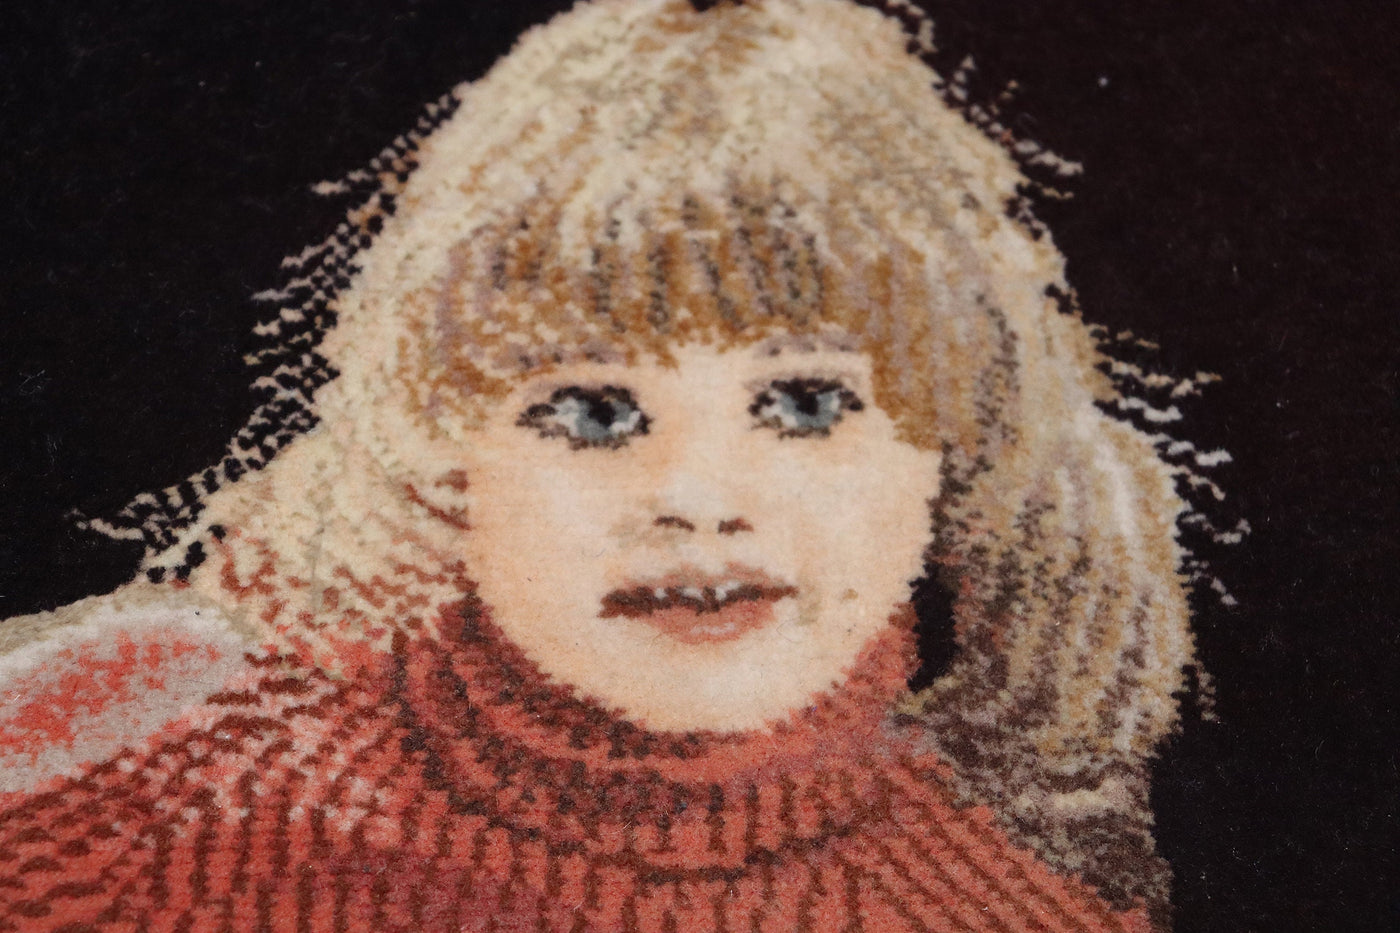 48x34 cm  handgeknüpfte Orientteppich Bilderteppich Wandteppich Mädchen mit Schaf  Orientsbazar   